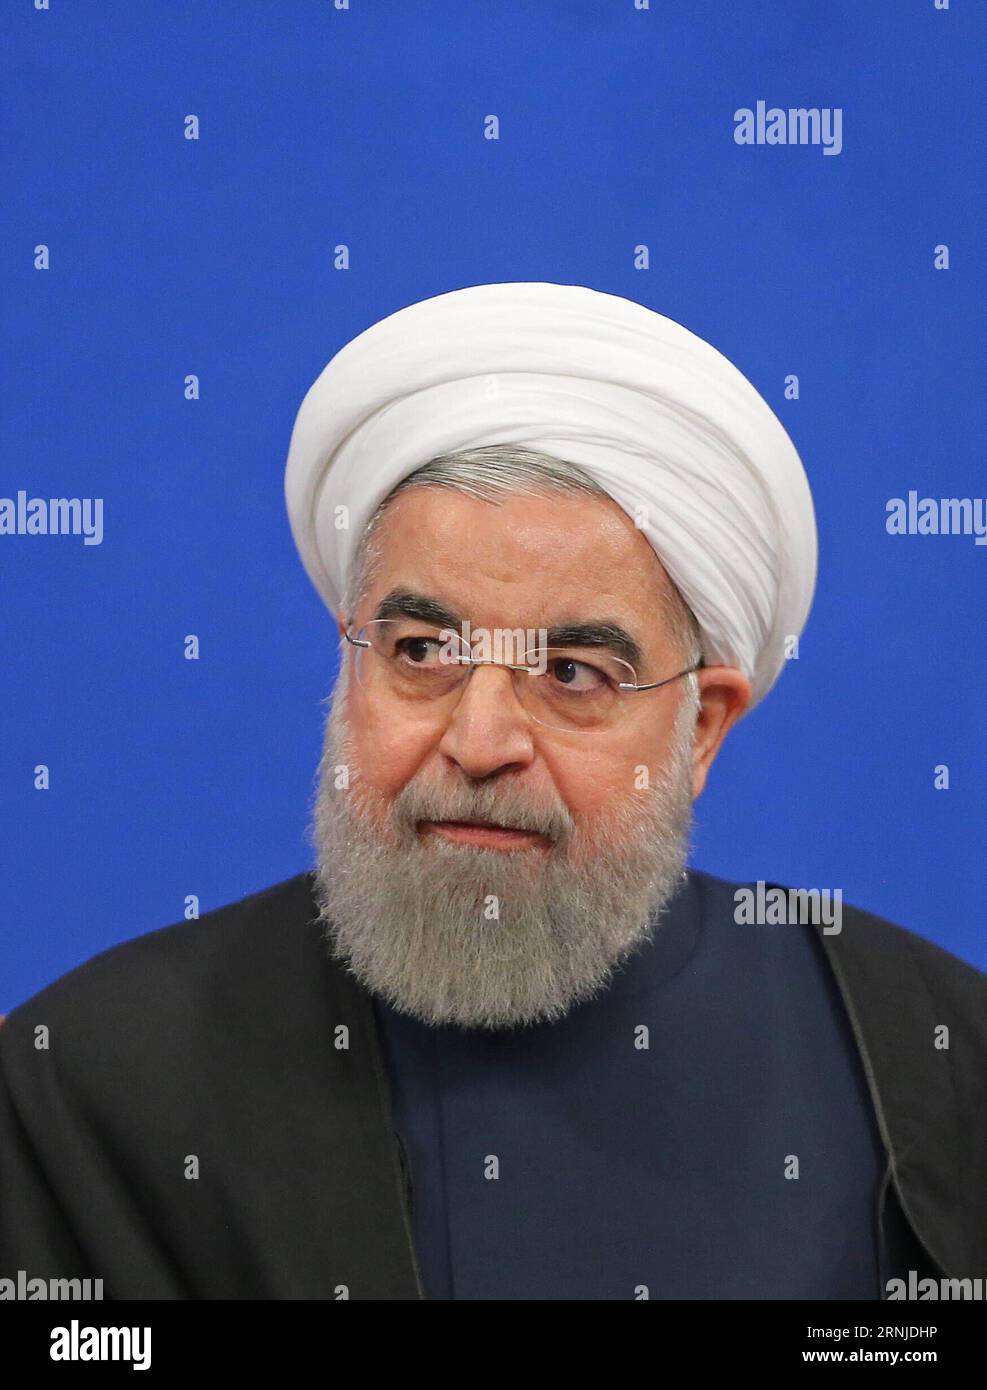 THERAN, le 17 janvier 2017 -- le président iranien Hassan Rouhani assiste à une conférence de presse à Téhéran, en Iran, le 17 janvier 2017. Rouhani a déclaré que l’Iran n’accepterait pas une révision de son accord nucléaire international, ont rapporté mercredi les médias locaux. L accord nucléaire international, connu sous le nom de Plan d action global conjoint (JCPOA), a résolu la question nucléaire controversée de Téhéran qui dure depuis une décennie. (gl) IRAN-TÉHÉRAN-HASSAN ROUHANI-NEWS CONFERENCE AhmadxHalabisaz PUBLICATIONxNOTxINxCHN THERAN Jan 17 2017 le président iranien Hassan Rouhani assiste à une conférence de presse à TÉHÉRAN Iran LE 17 2017 janvier Rouhani a dit Iran W. Banque D'Images